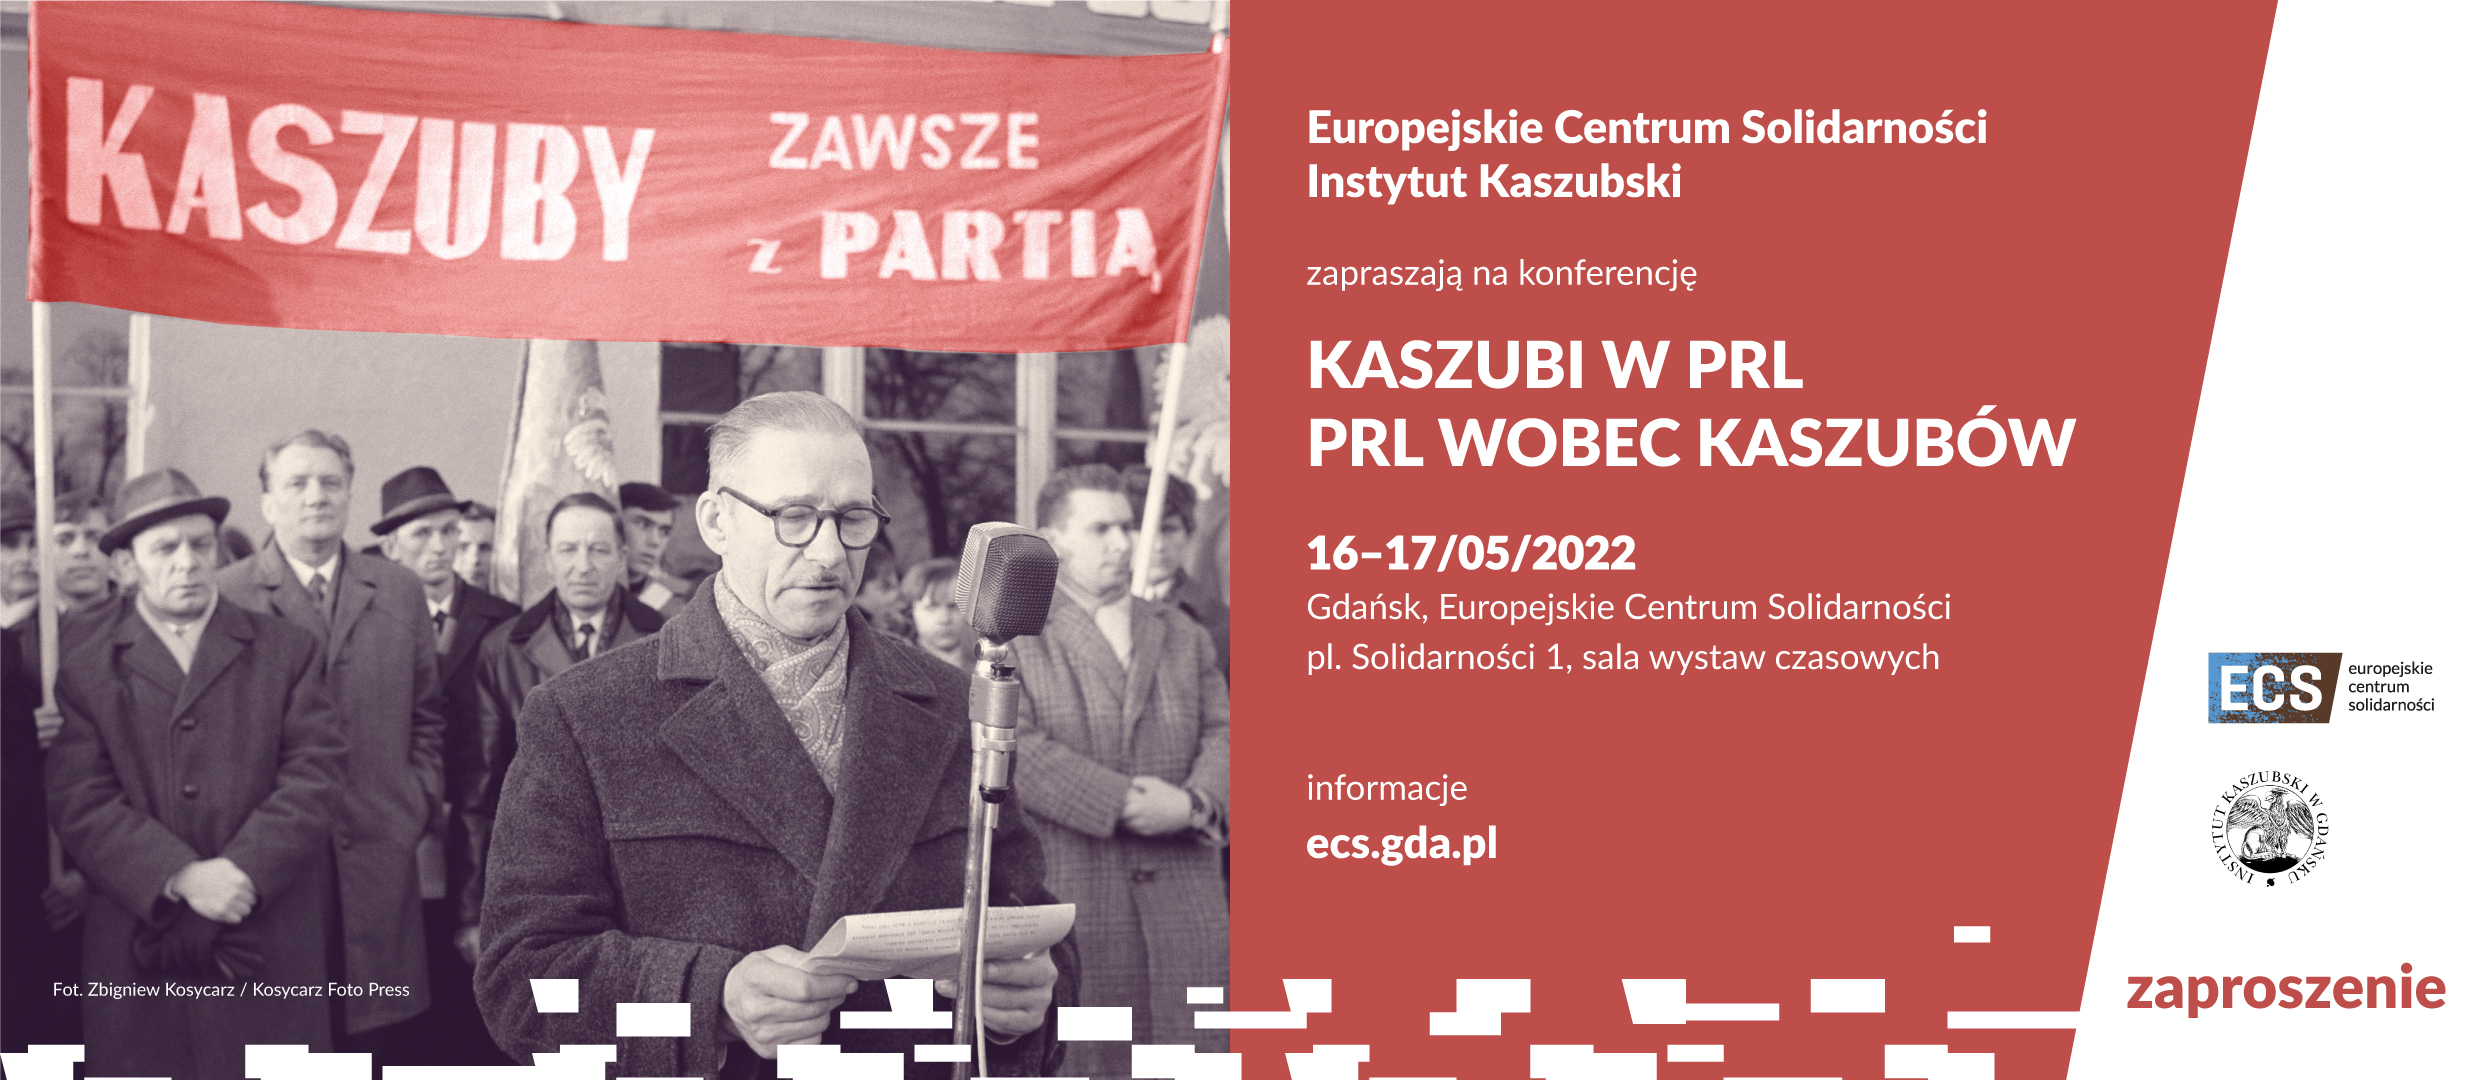 baner promujący konferencję Kaszubi w PRL. PRL wobec kaszubów